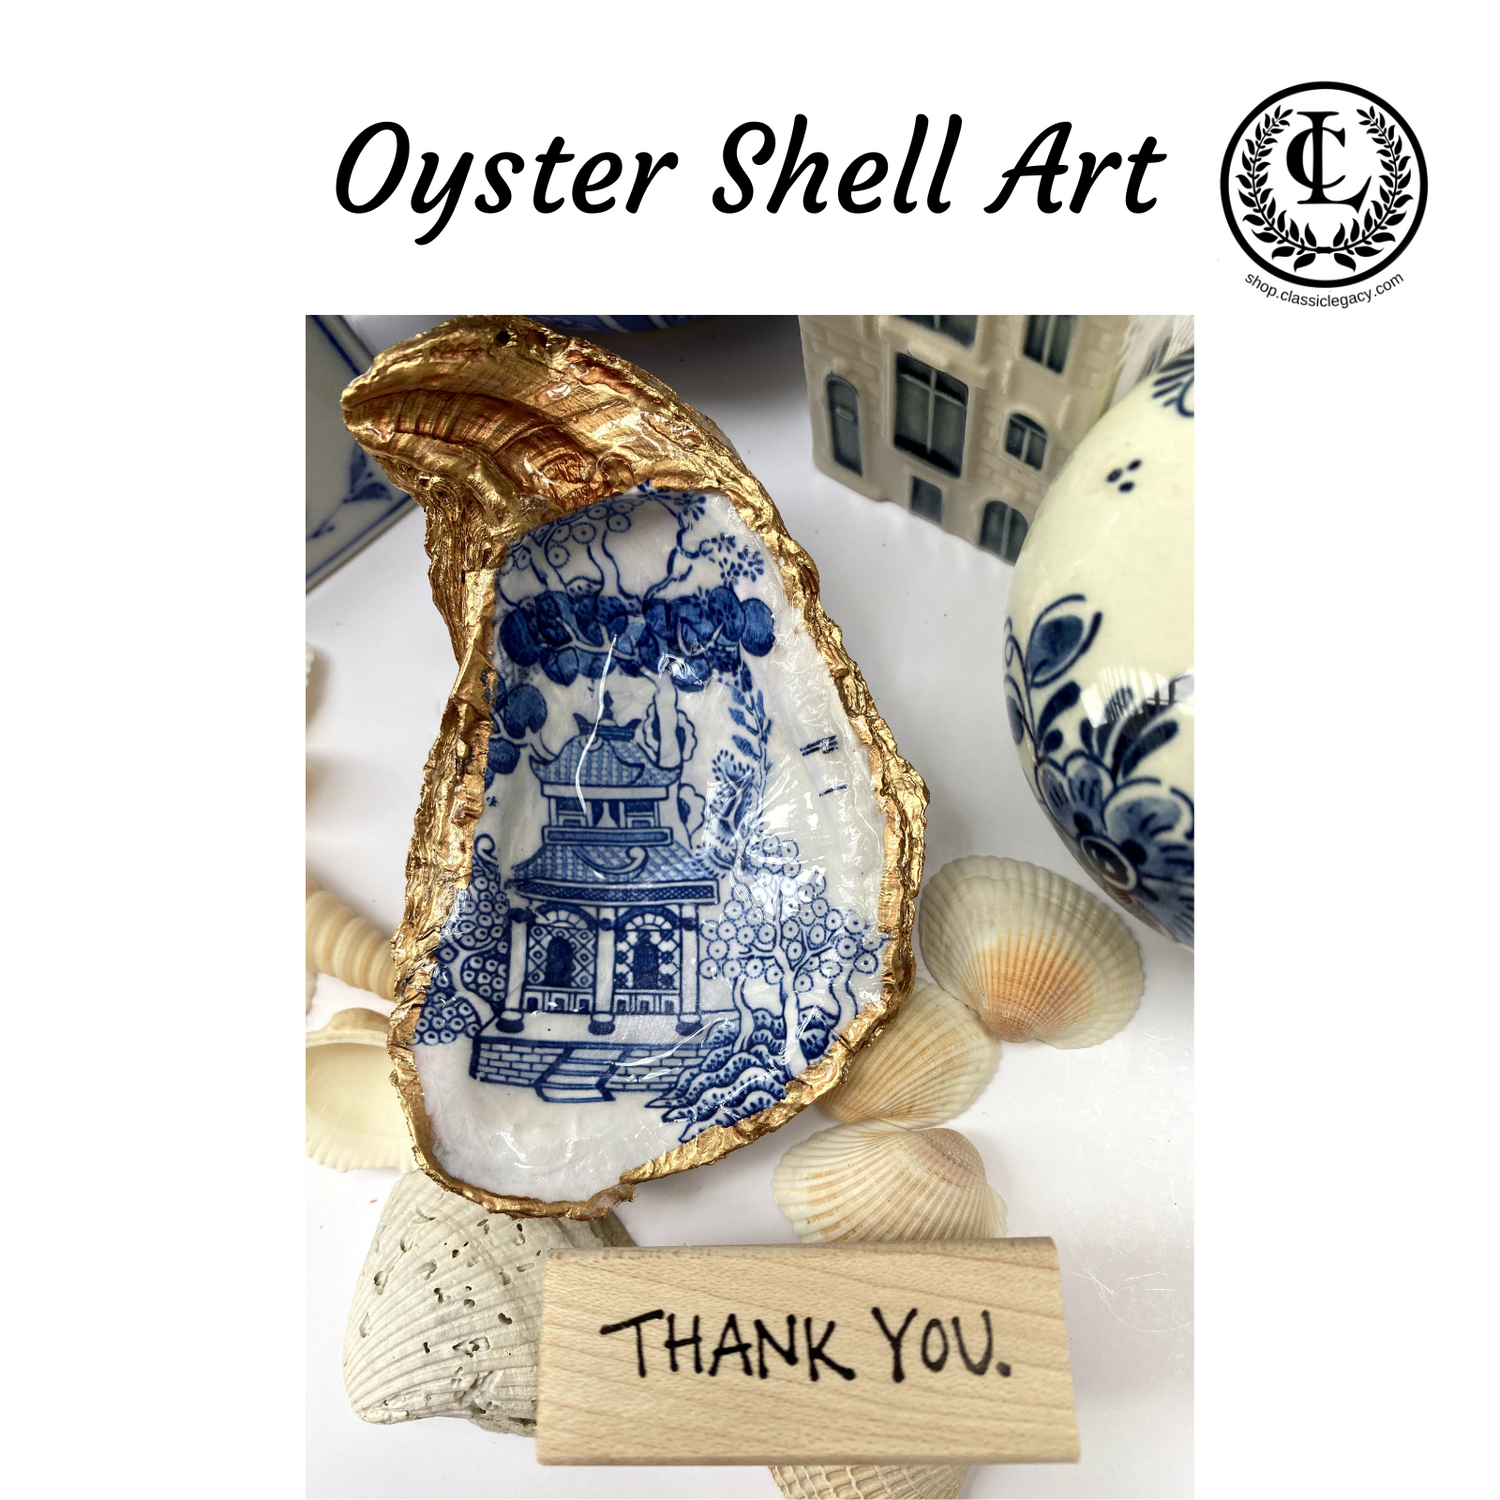 Oyster Shell Art